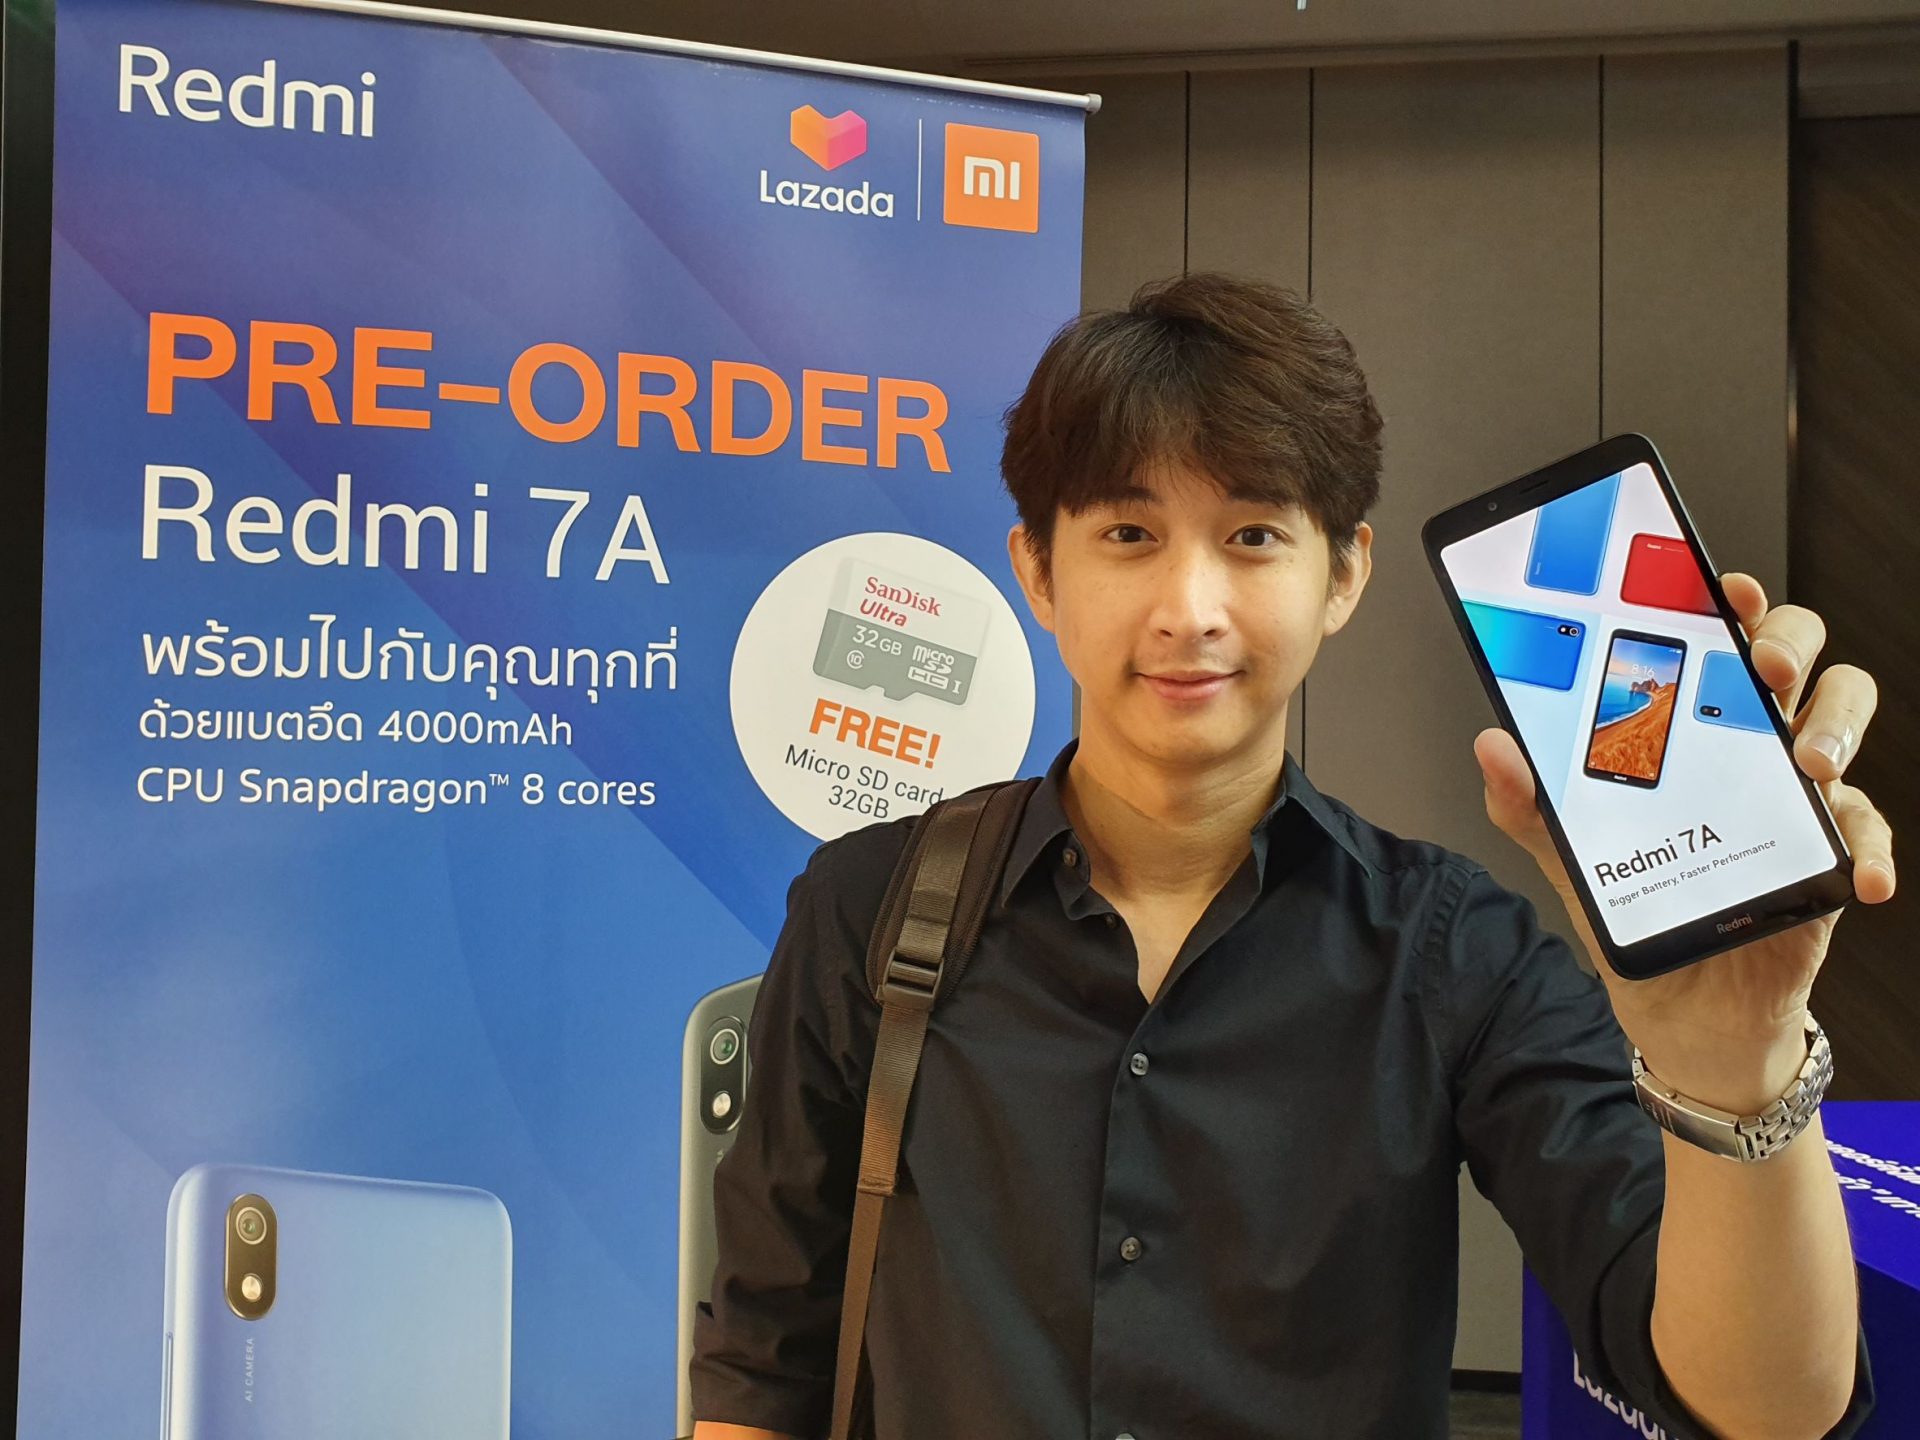 Xiaomi จับมือ Lazada เปิดตัวมือถือ Redmi 7A ในราคาเริ่มต้น 2,999 บาทพร้อมเผย Mi Smart Band 4 ตัวล่าสุด